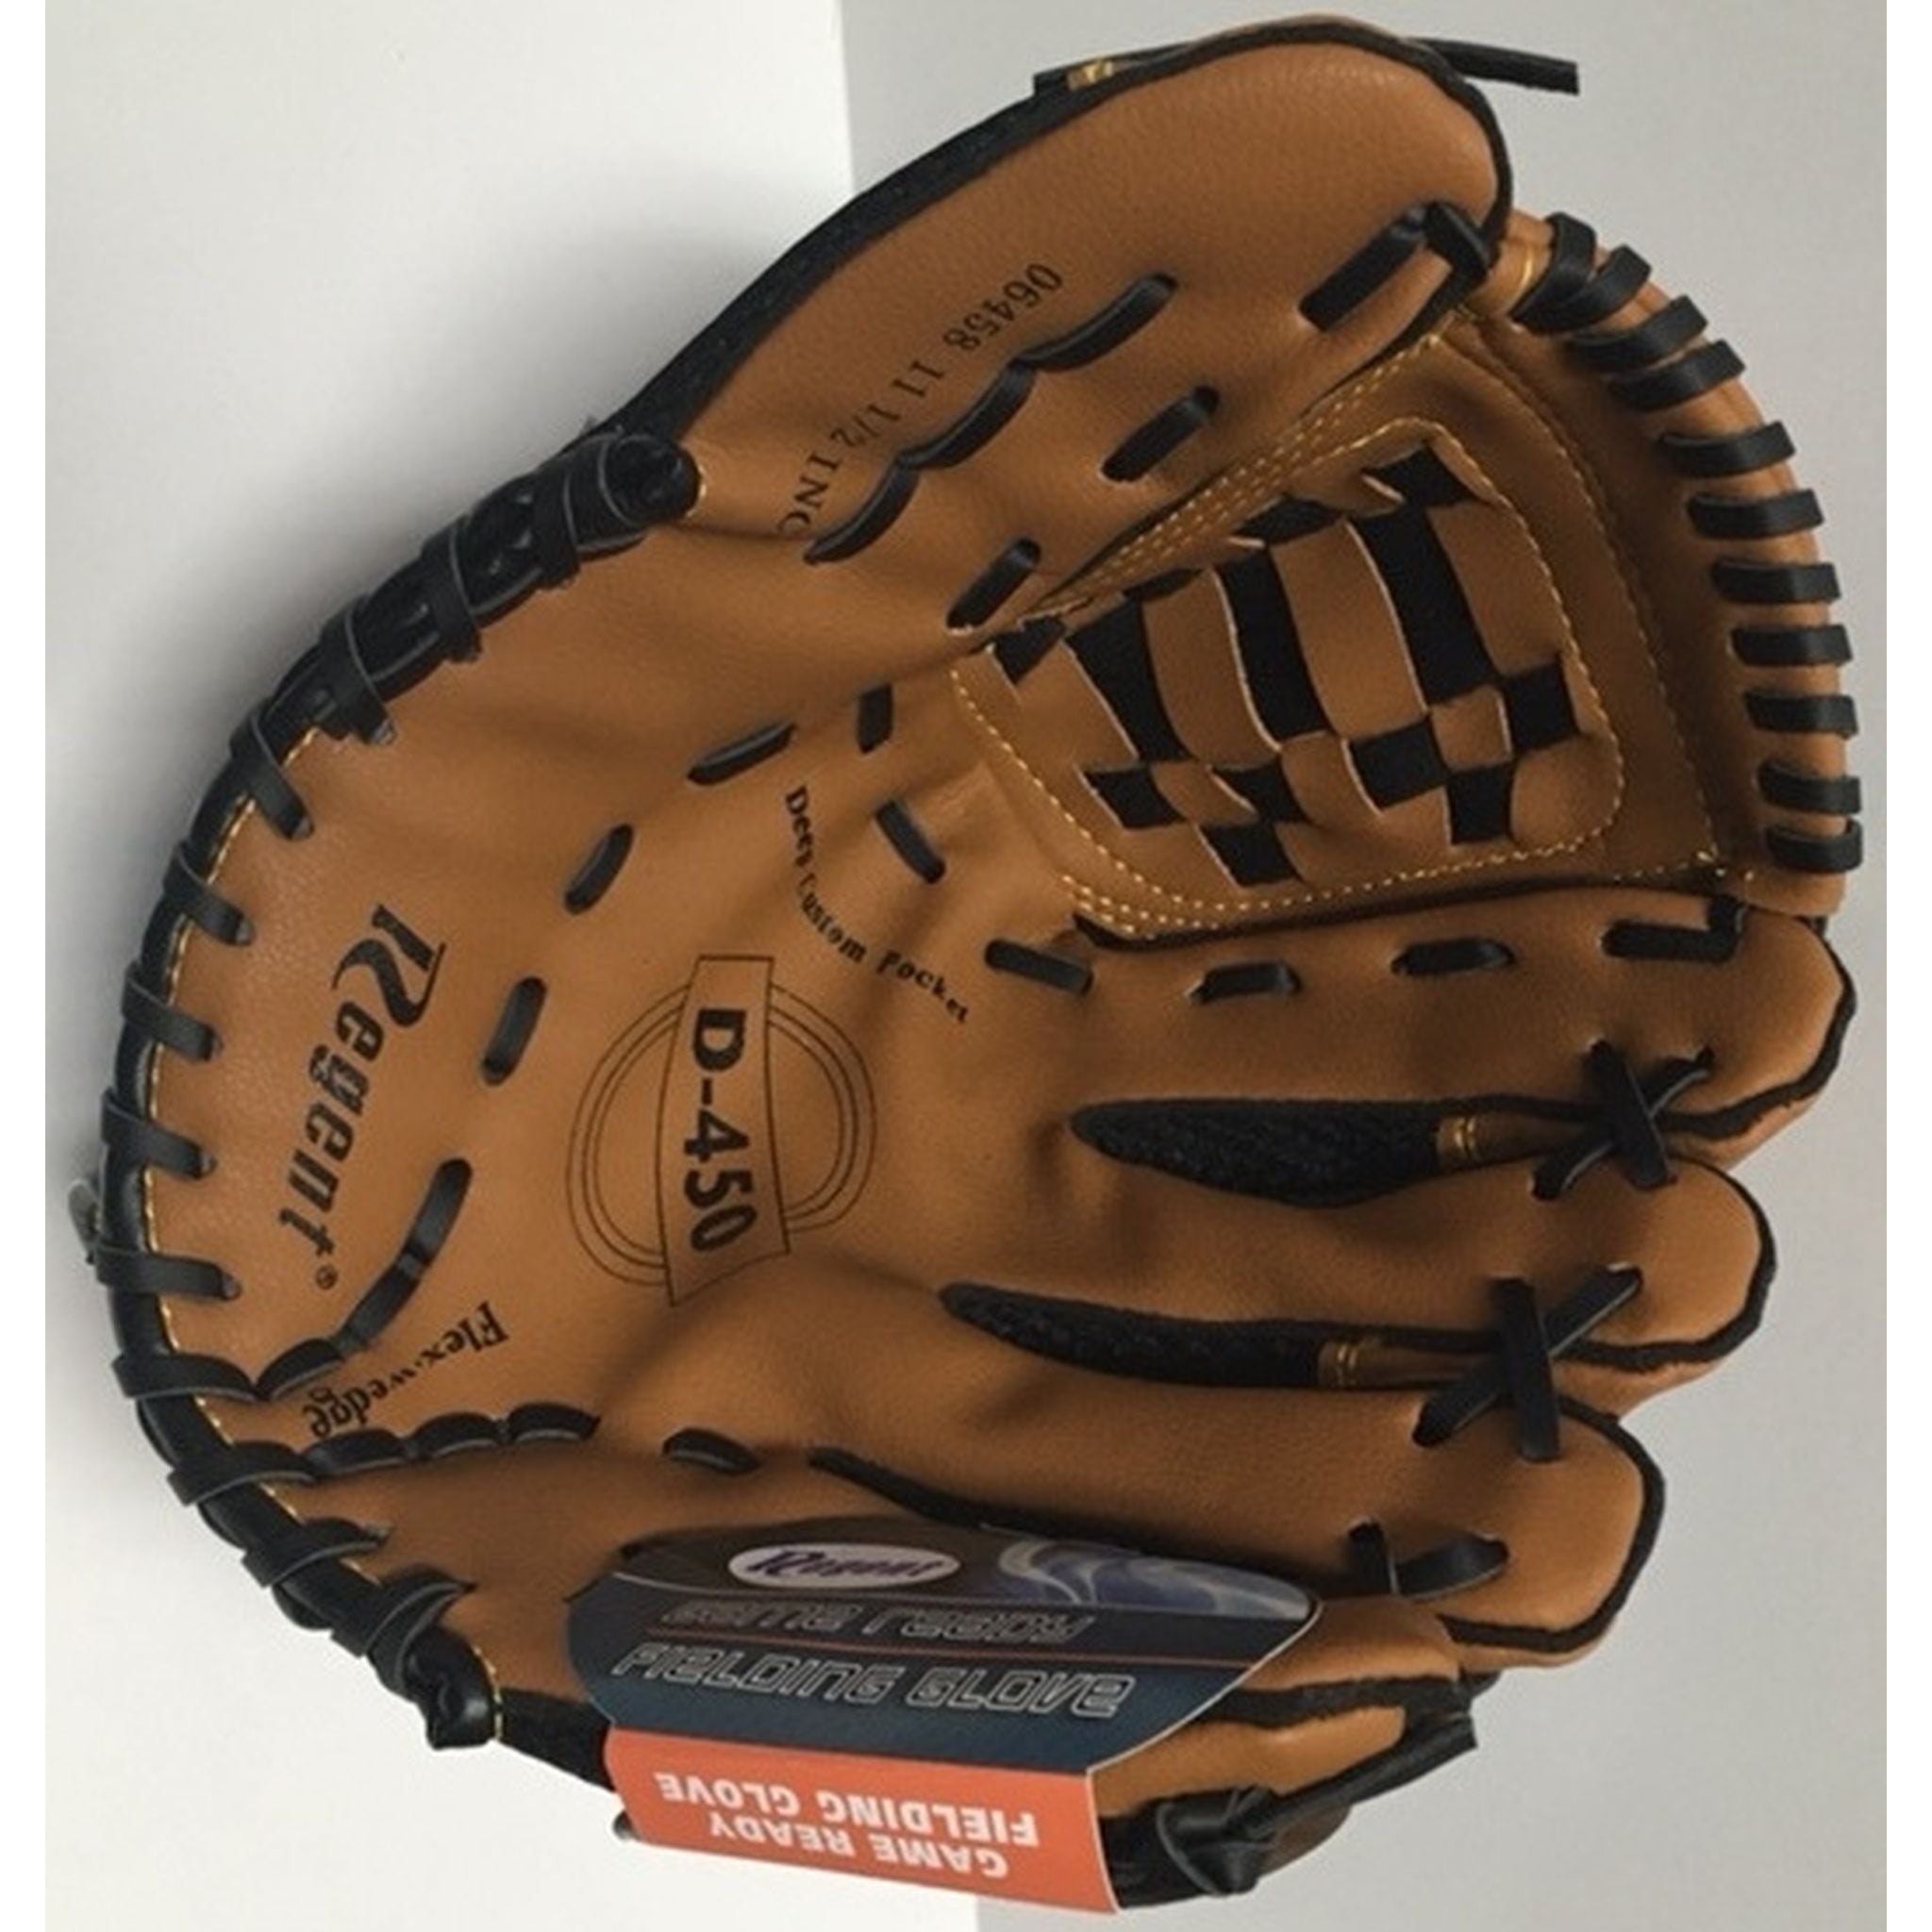 Regent D-450 12 inch Baseball/Softball Glove